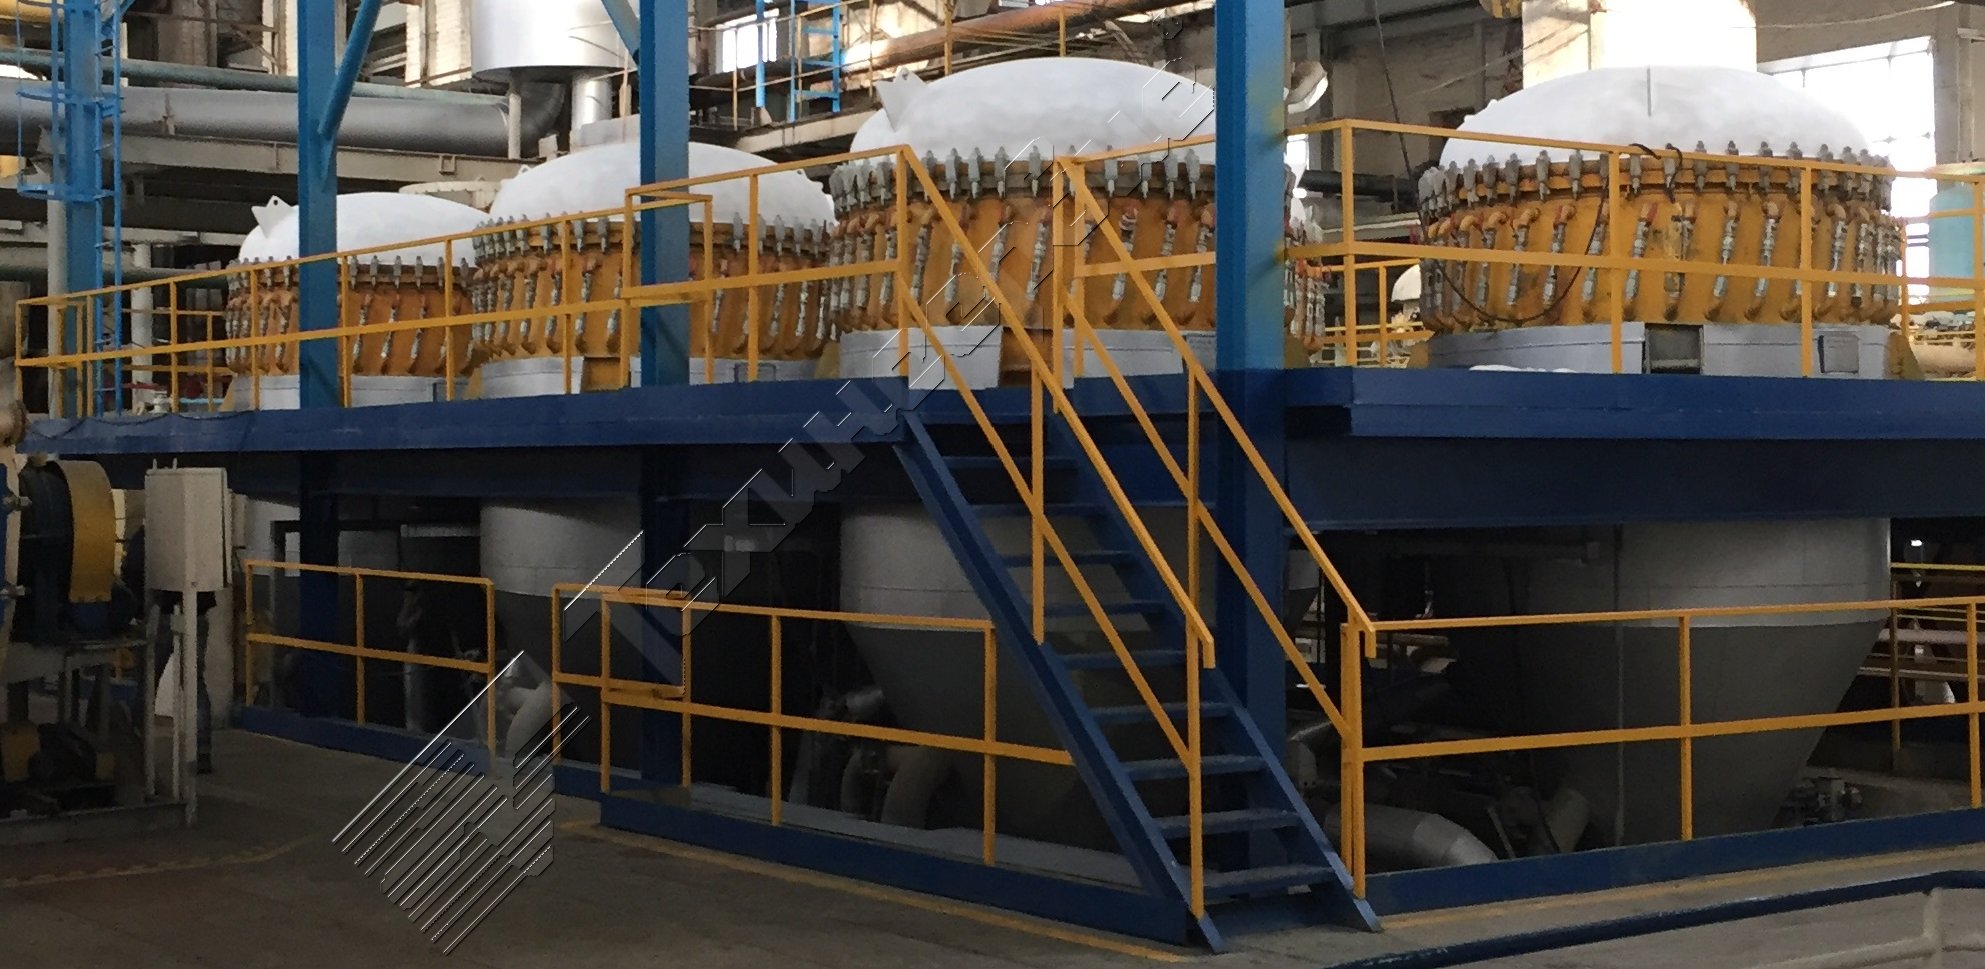 Модернизированные Техинсервис фильтры TF на Волоконовском сахарном заводе, Русагро